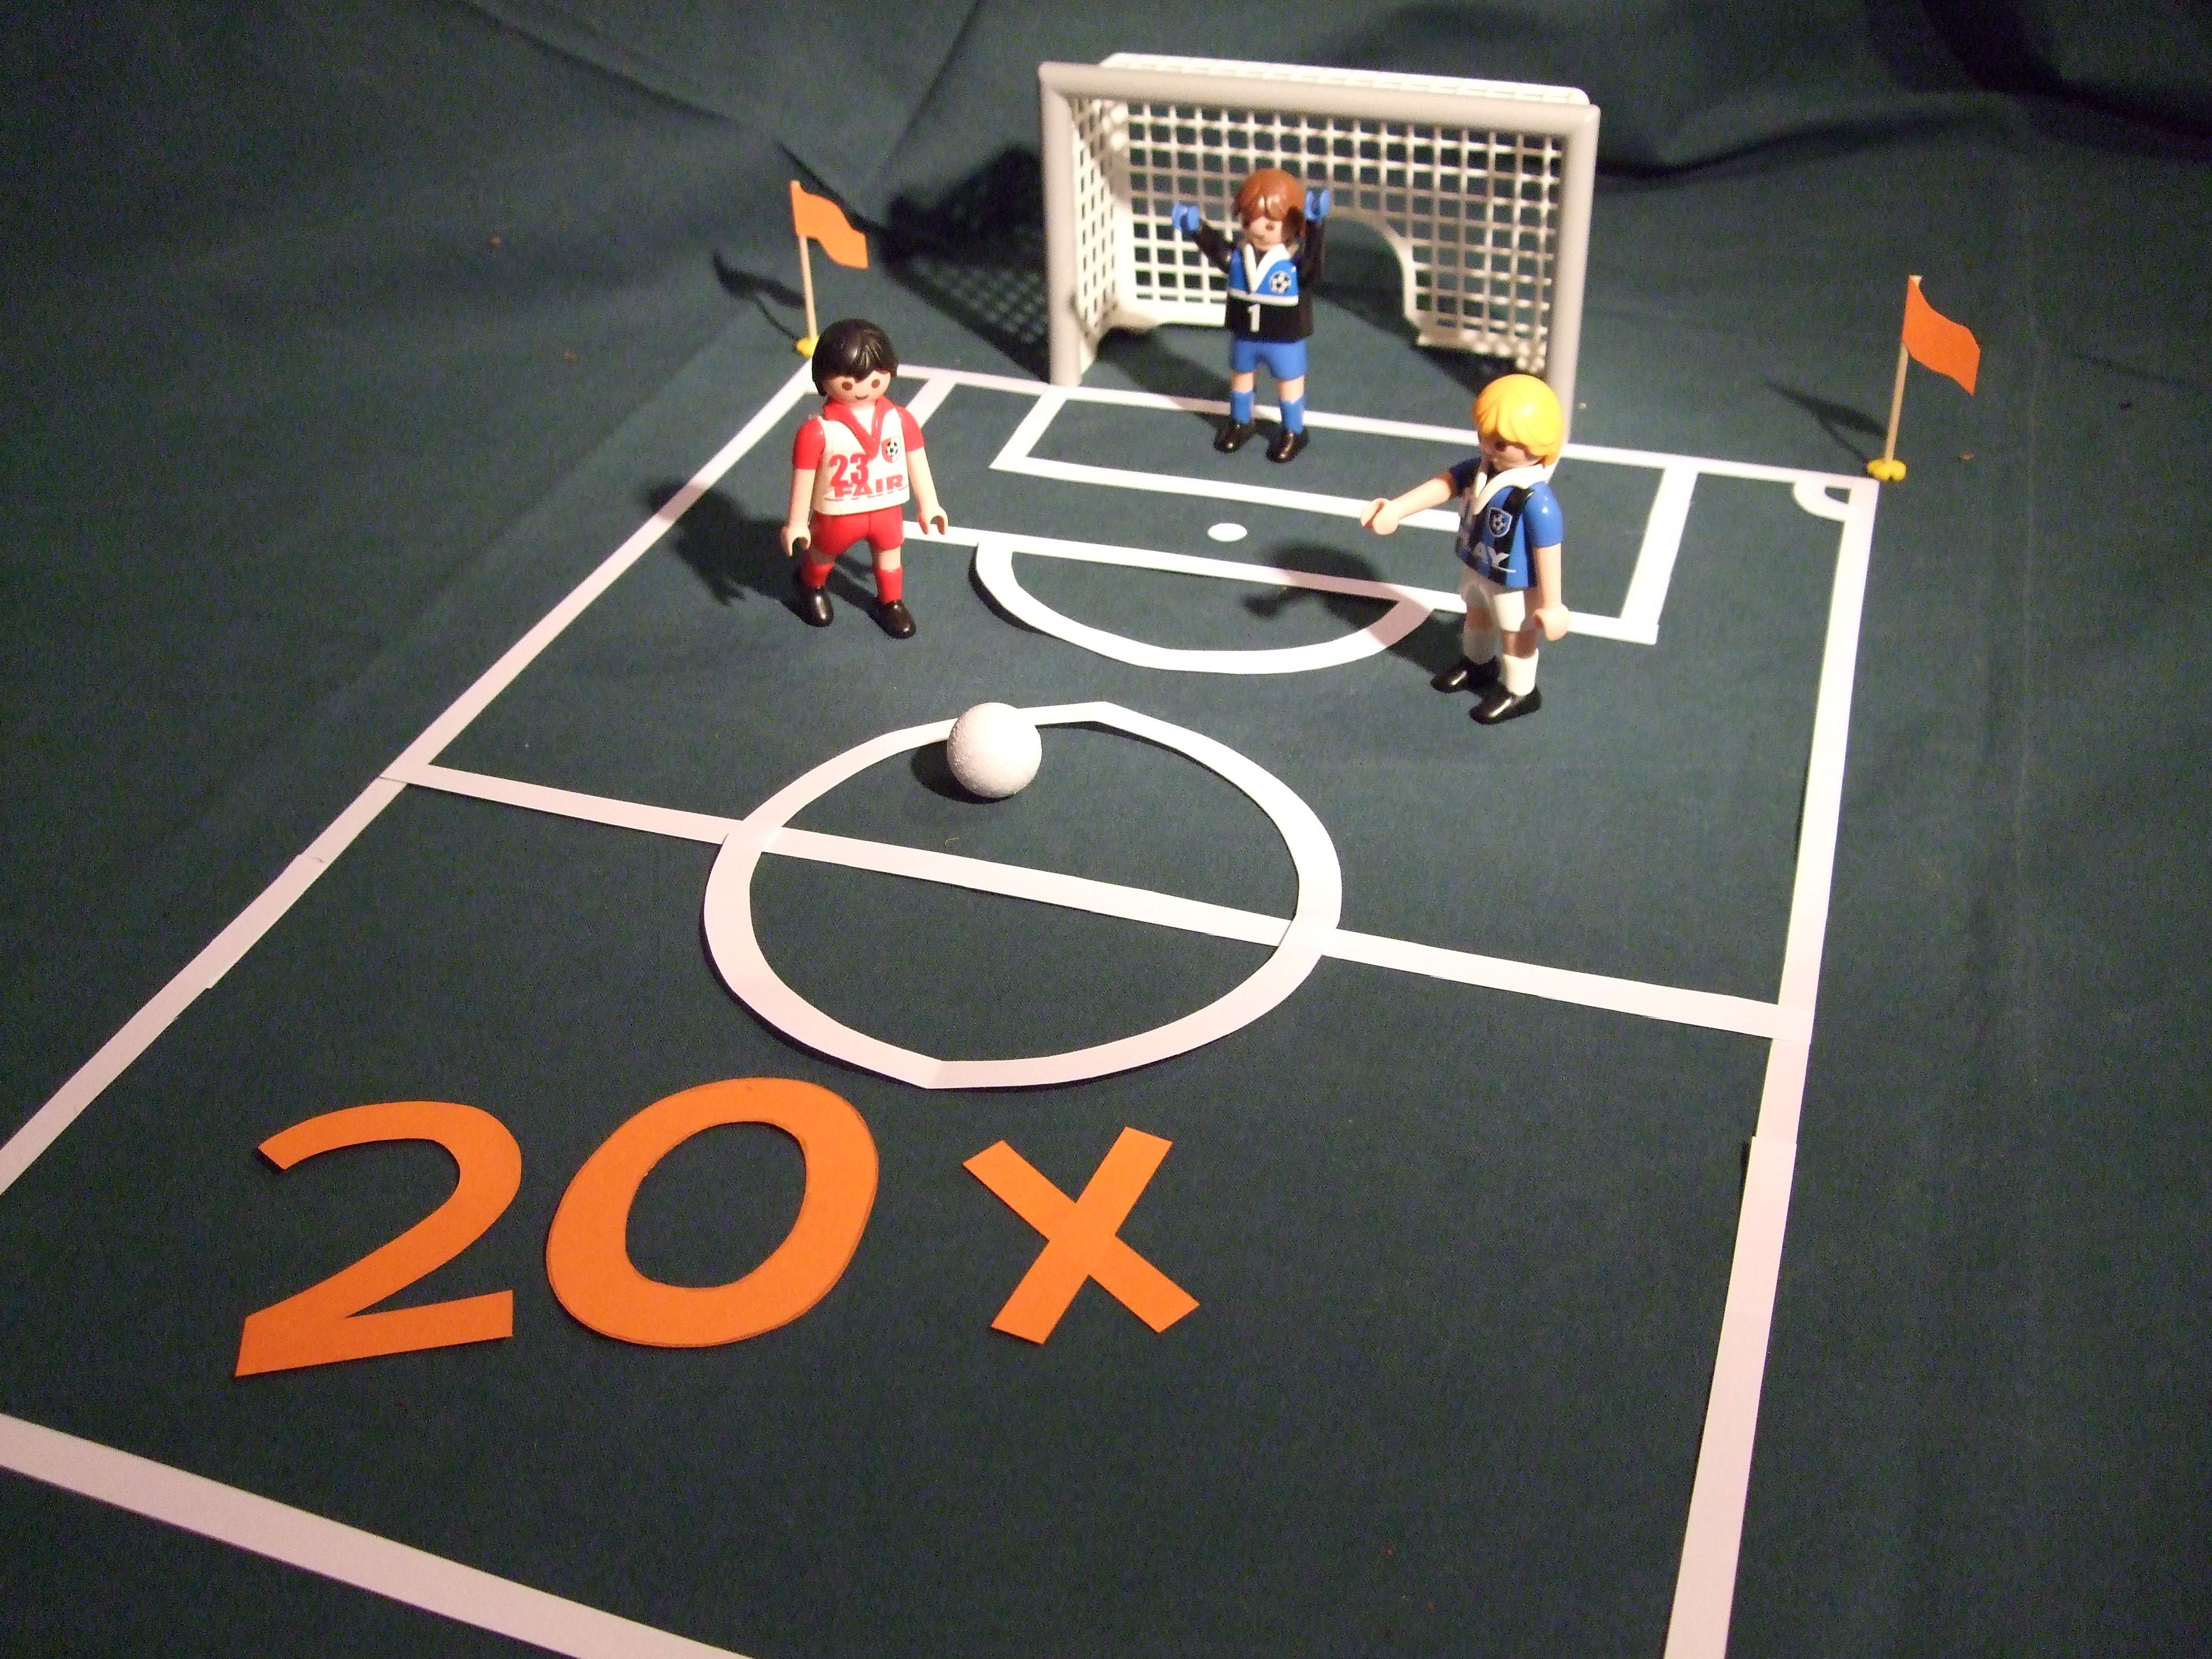 Mit Playmobile Figuren wurde ein Fußballspielfeld nachgestellt. Zu sehen ist das Spielfeld, ein Tor und 3 Playmobilfiguren. Im Spielfeld ist im vorderen Bereich eine 20 x in oranger Schrift aufgeklebt worden